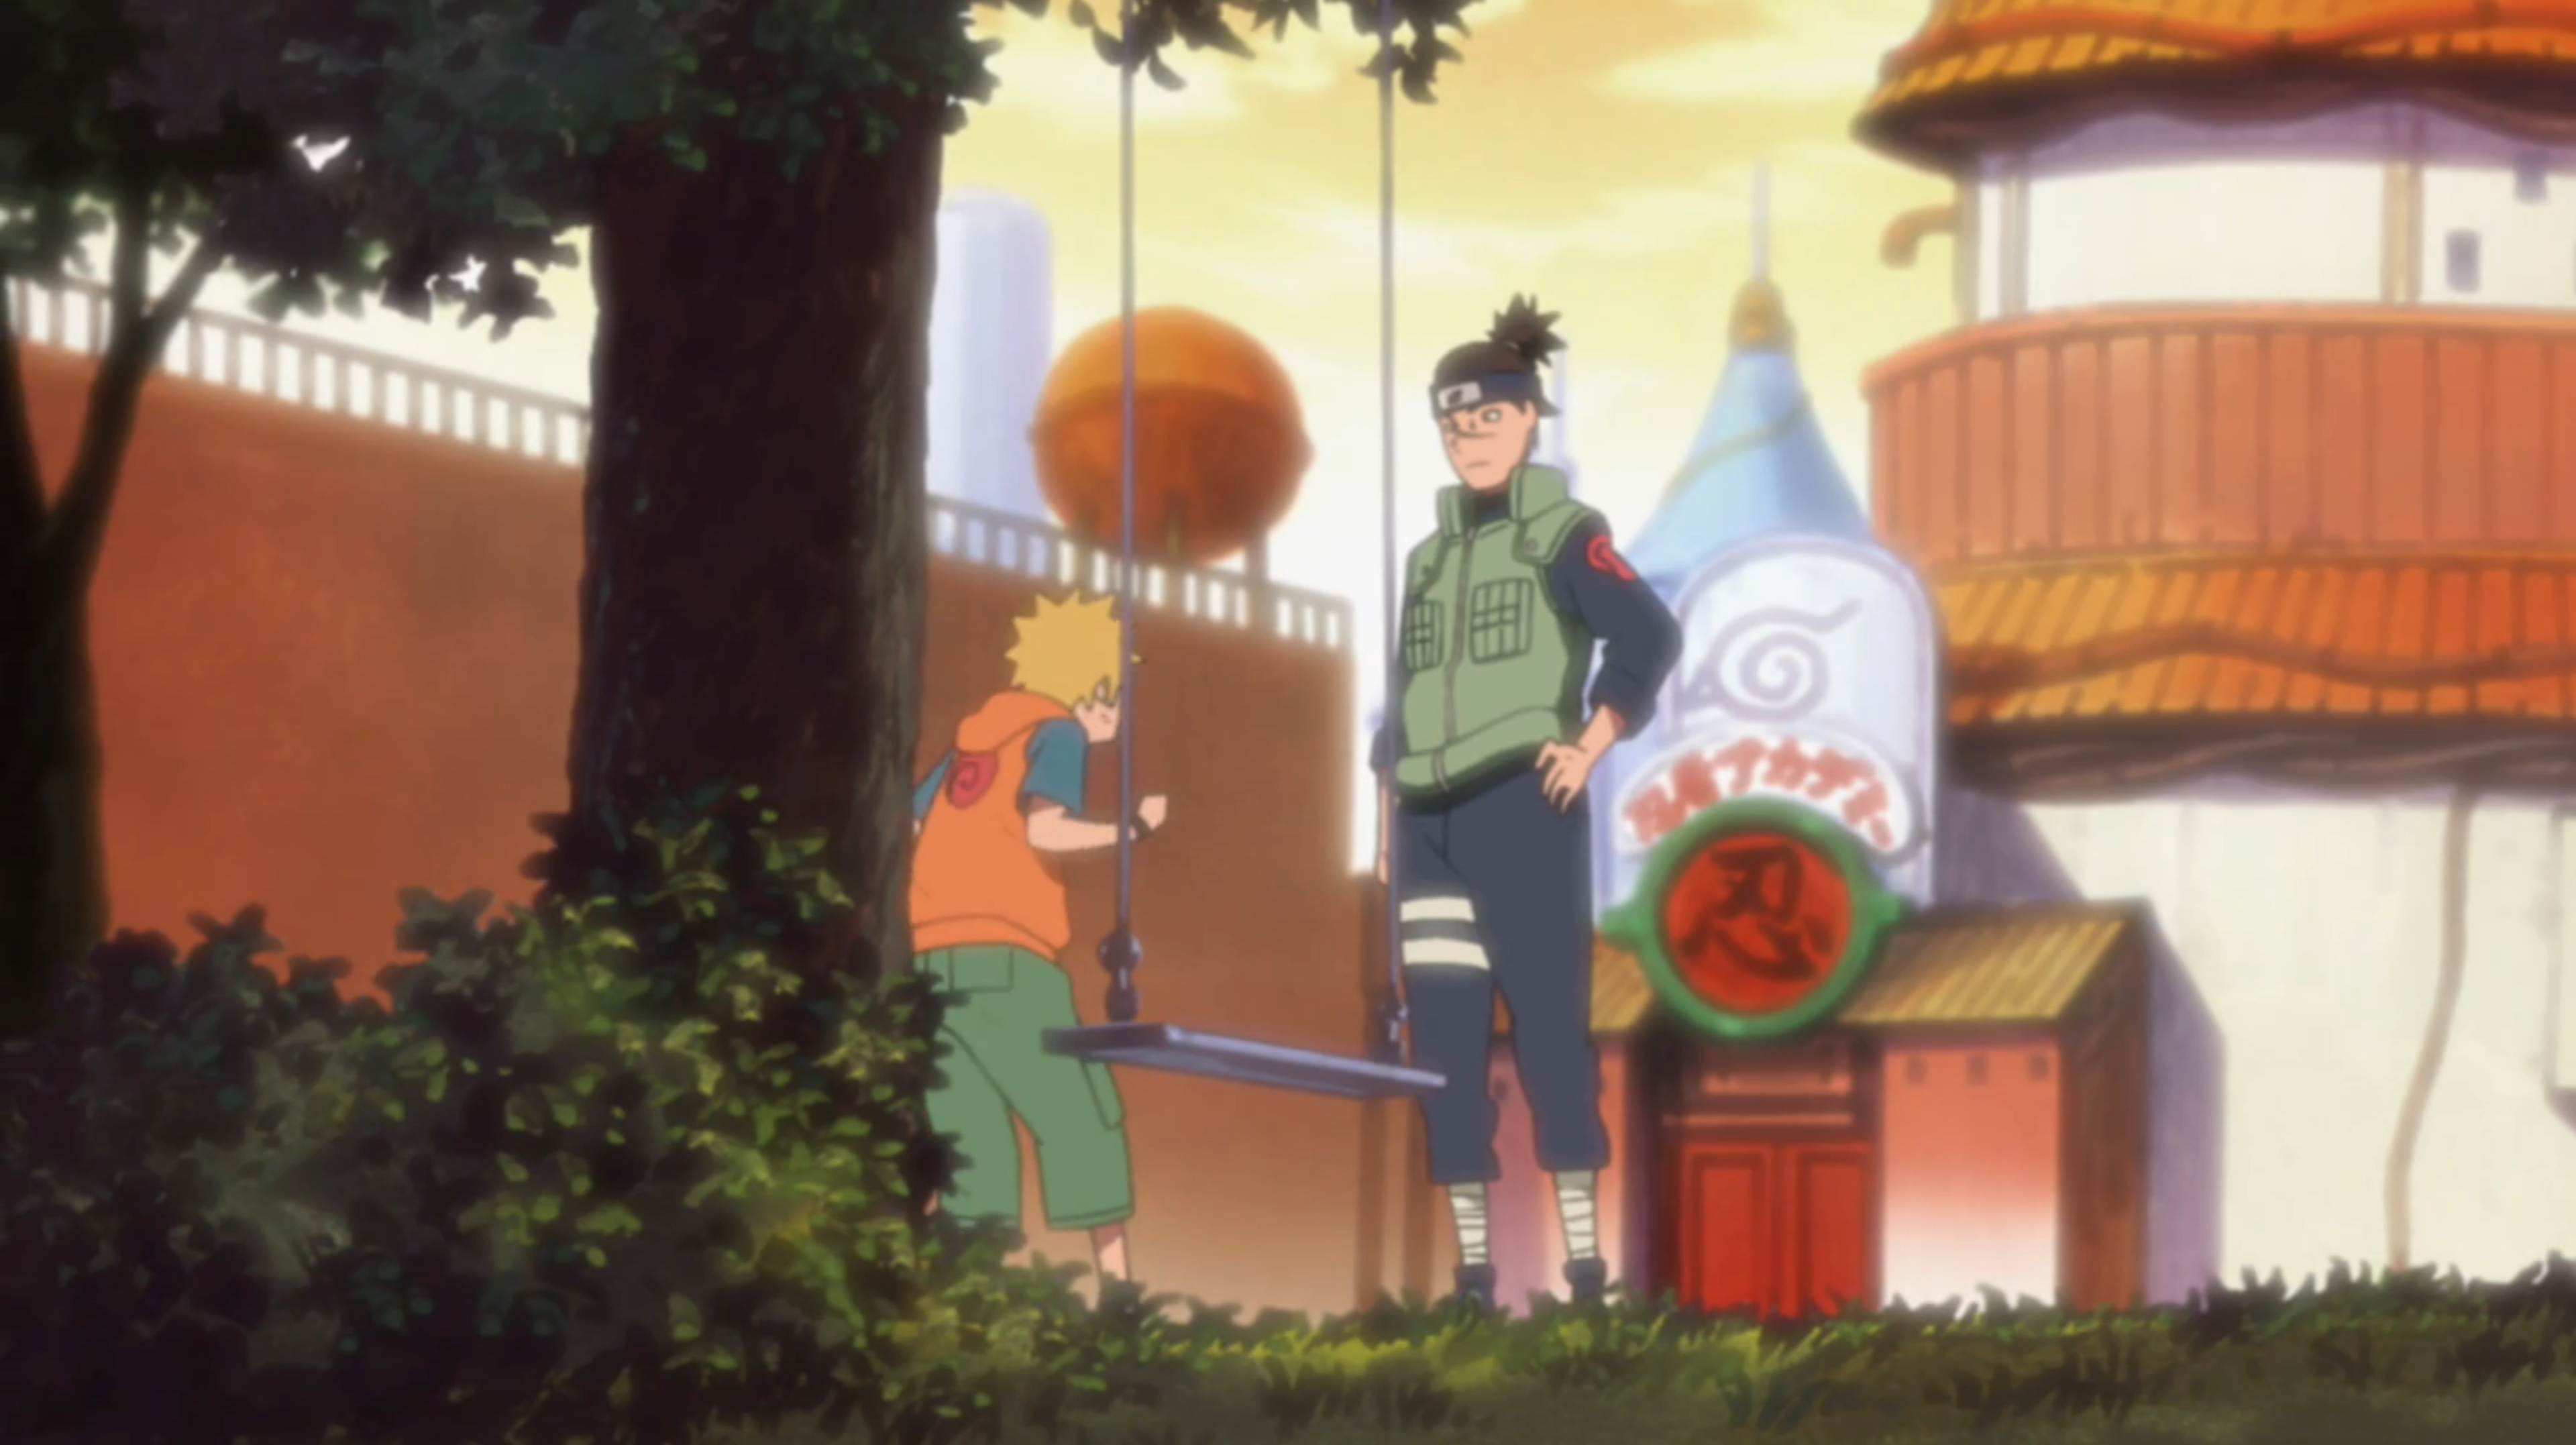 NARUTO/#1343135  Naruto shippuden anime, Iruka naruto, Naruto